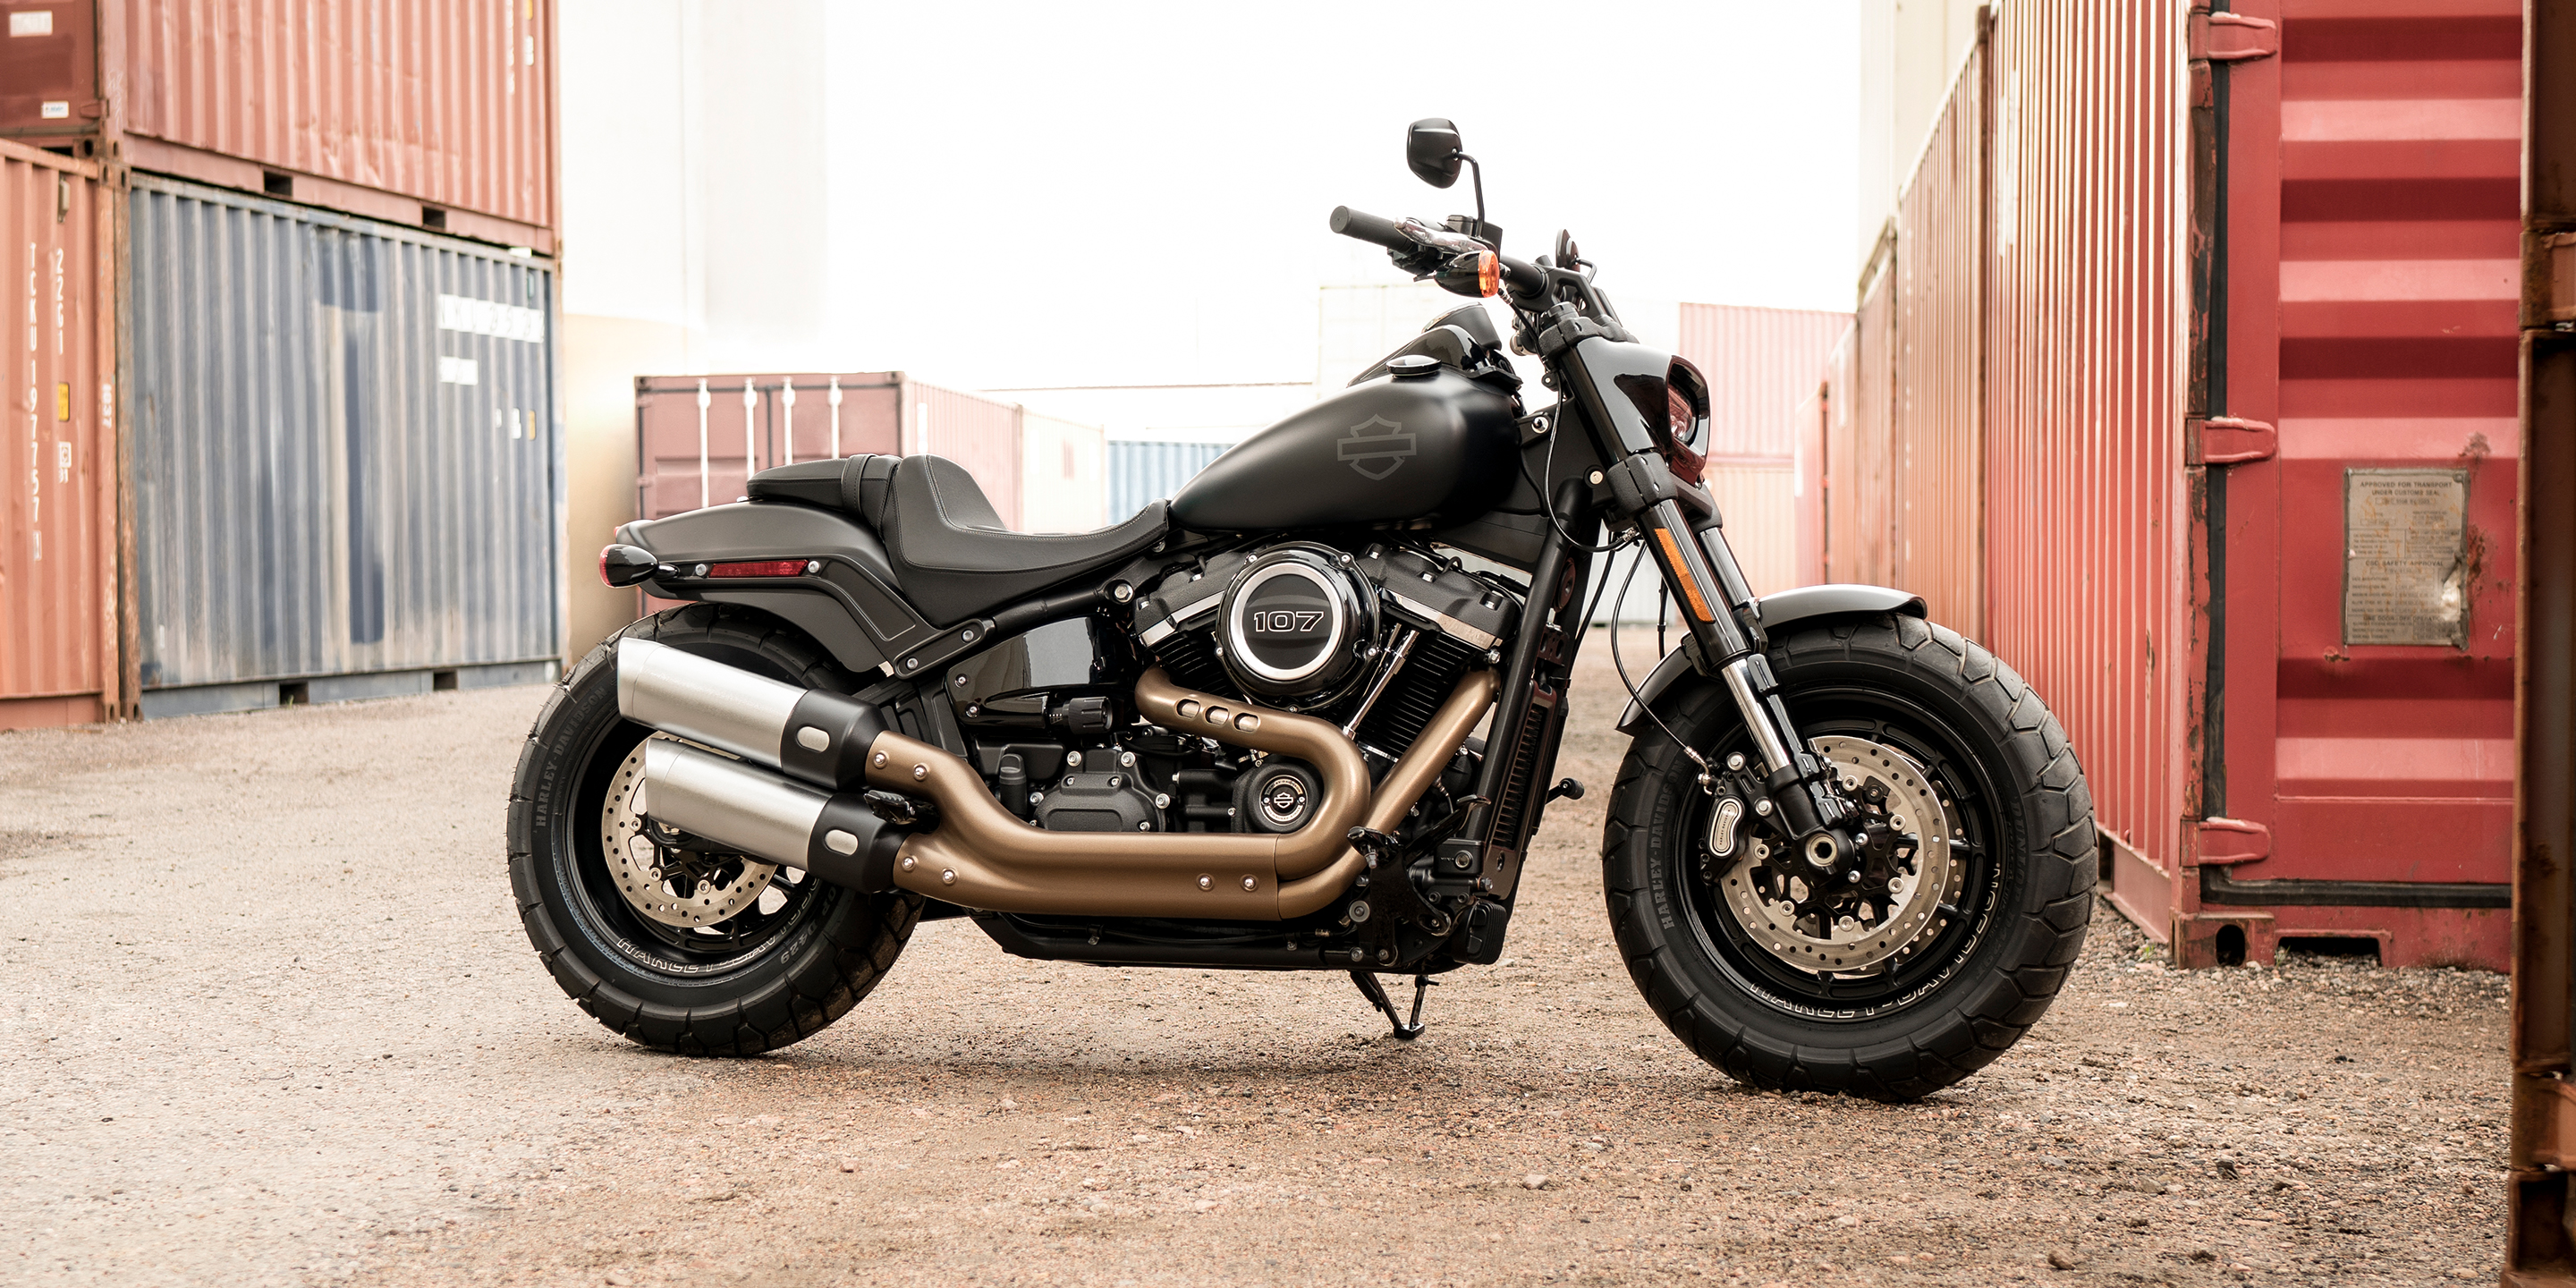 2019 Fat Bob Motorcycle | Harley-Davidson India